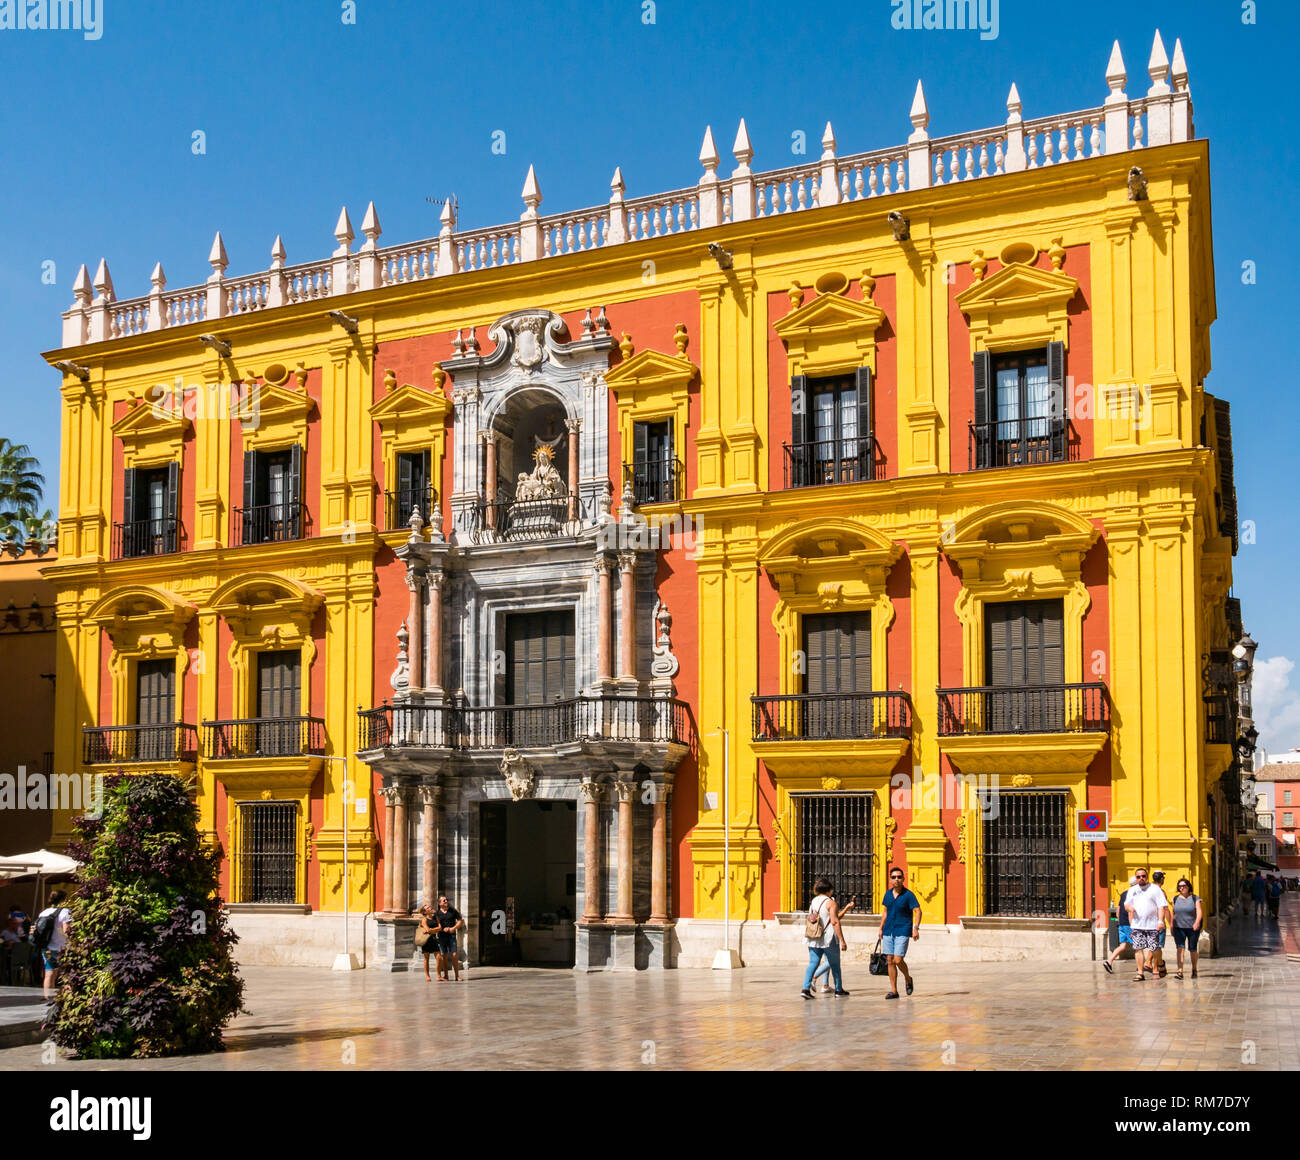 Menschen zu Fuß Vergangenheit bischöflicher Palast oder Bischöfen Palast, dem Plaza del Obispo, Malaga, Andalusien, Spanien Stockfoto